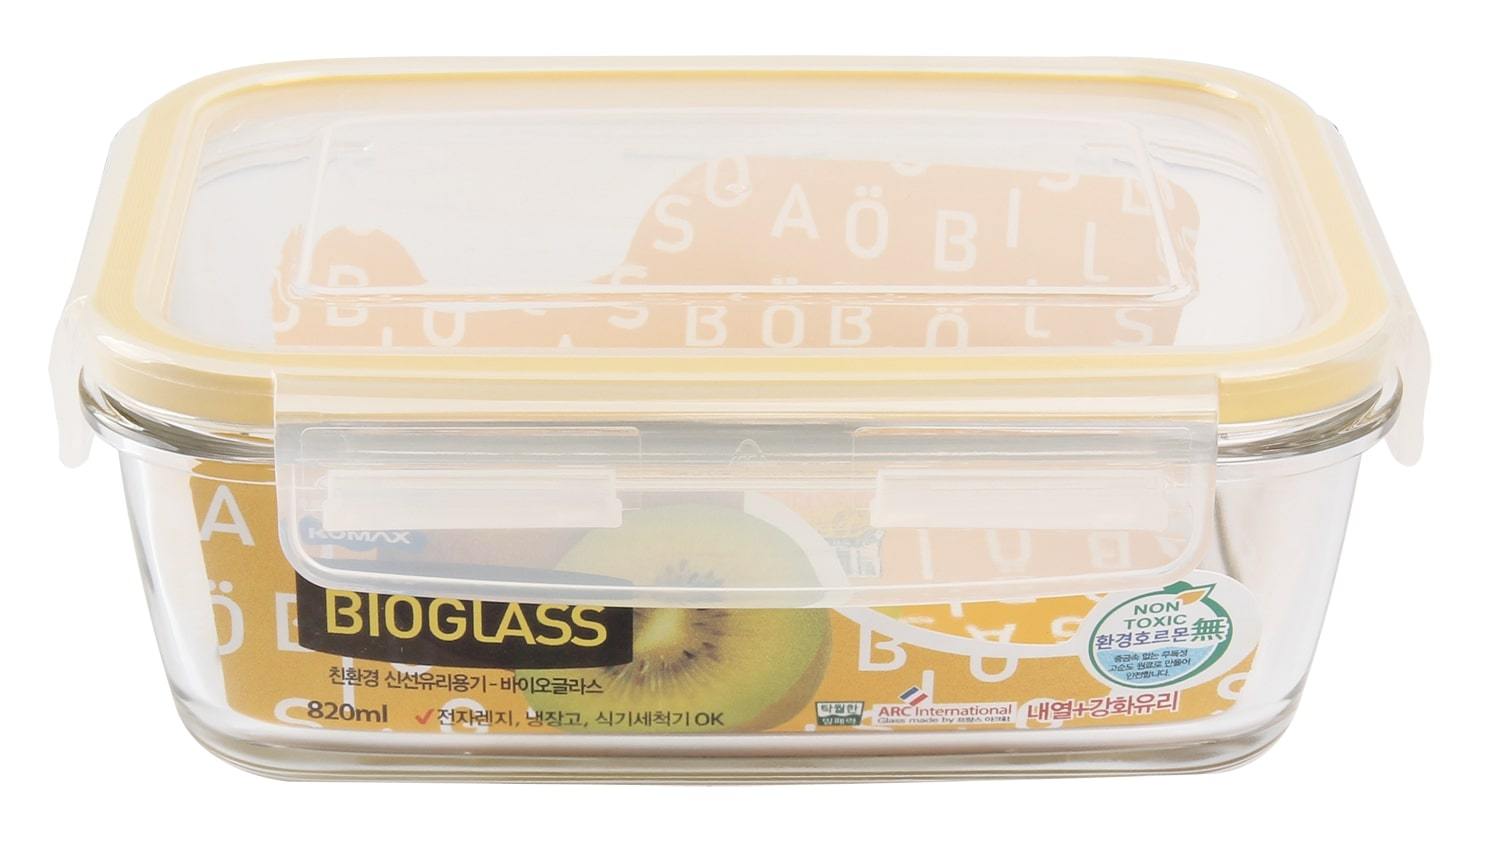 Komax Bioglass Rectangular Food Storage Container, 820 ml